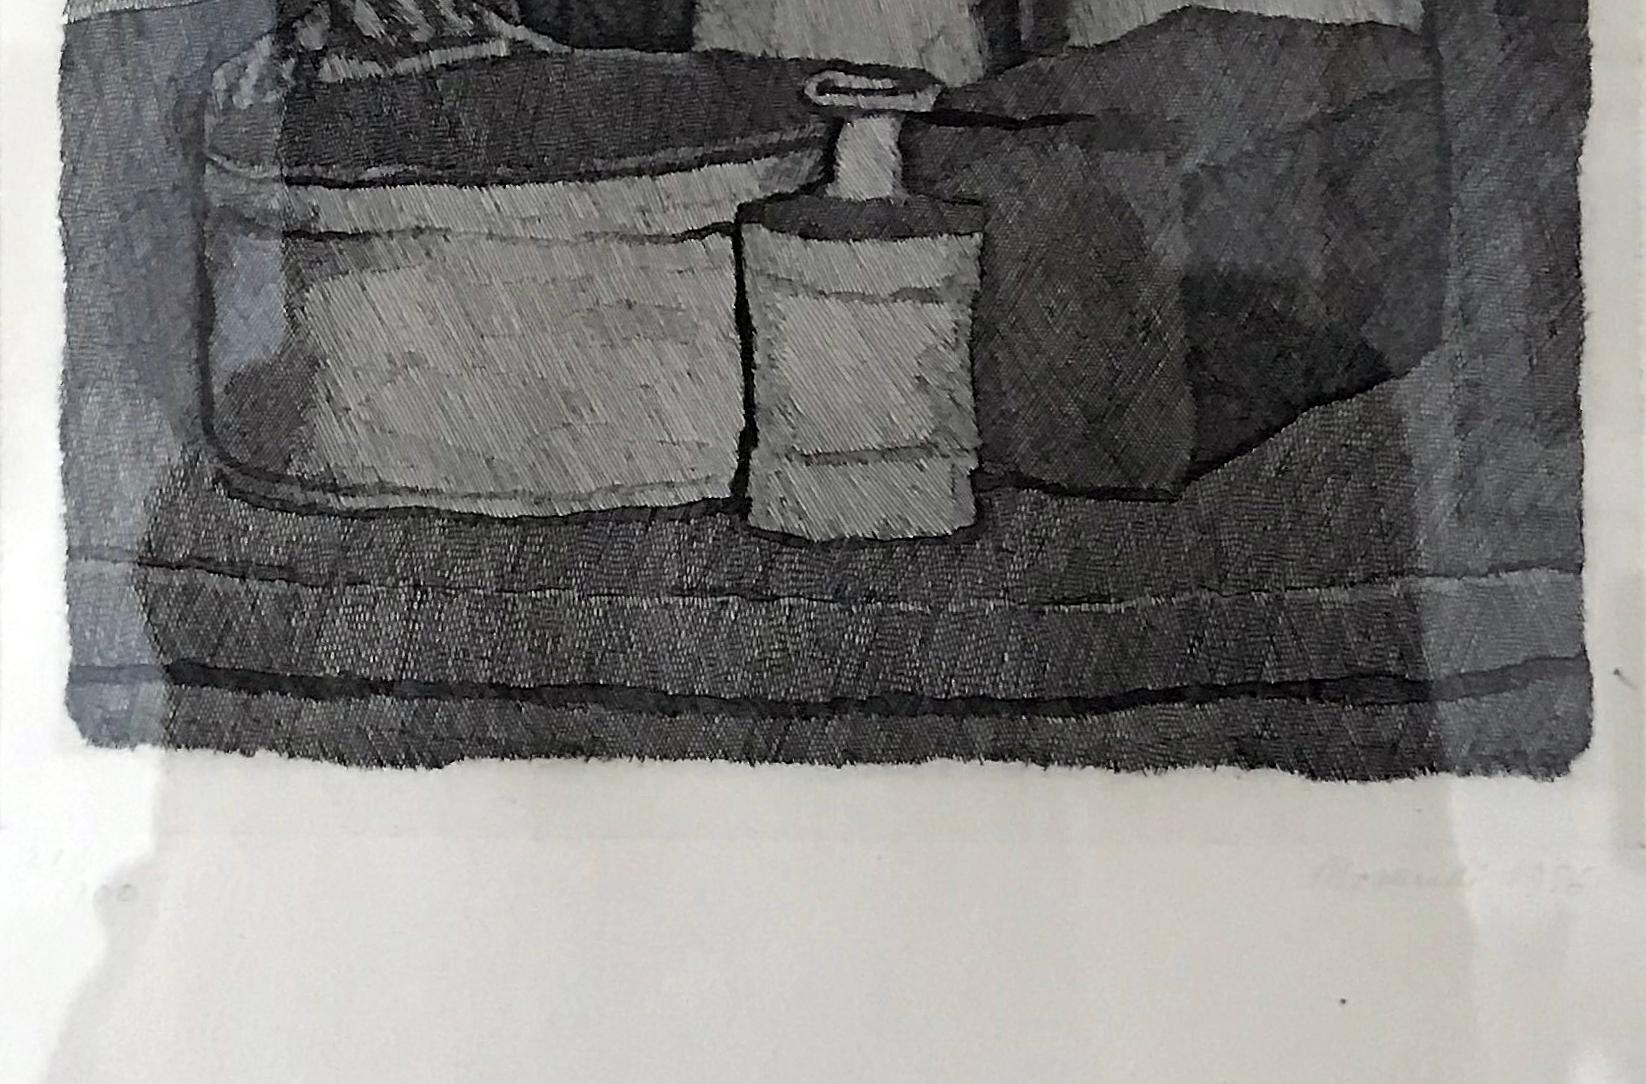 Natura morta con quattro oggetti e tre bottiglie
1956
Gravure à l'eau-forte
15 3/4 x 11 3/4 pouces
Edition : 27/100
Signé, daté et numéroté au crayon, dans la marge inférieure
Encadré, excellent état